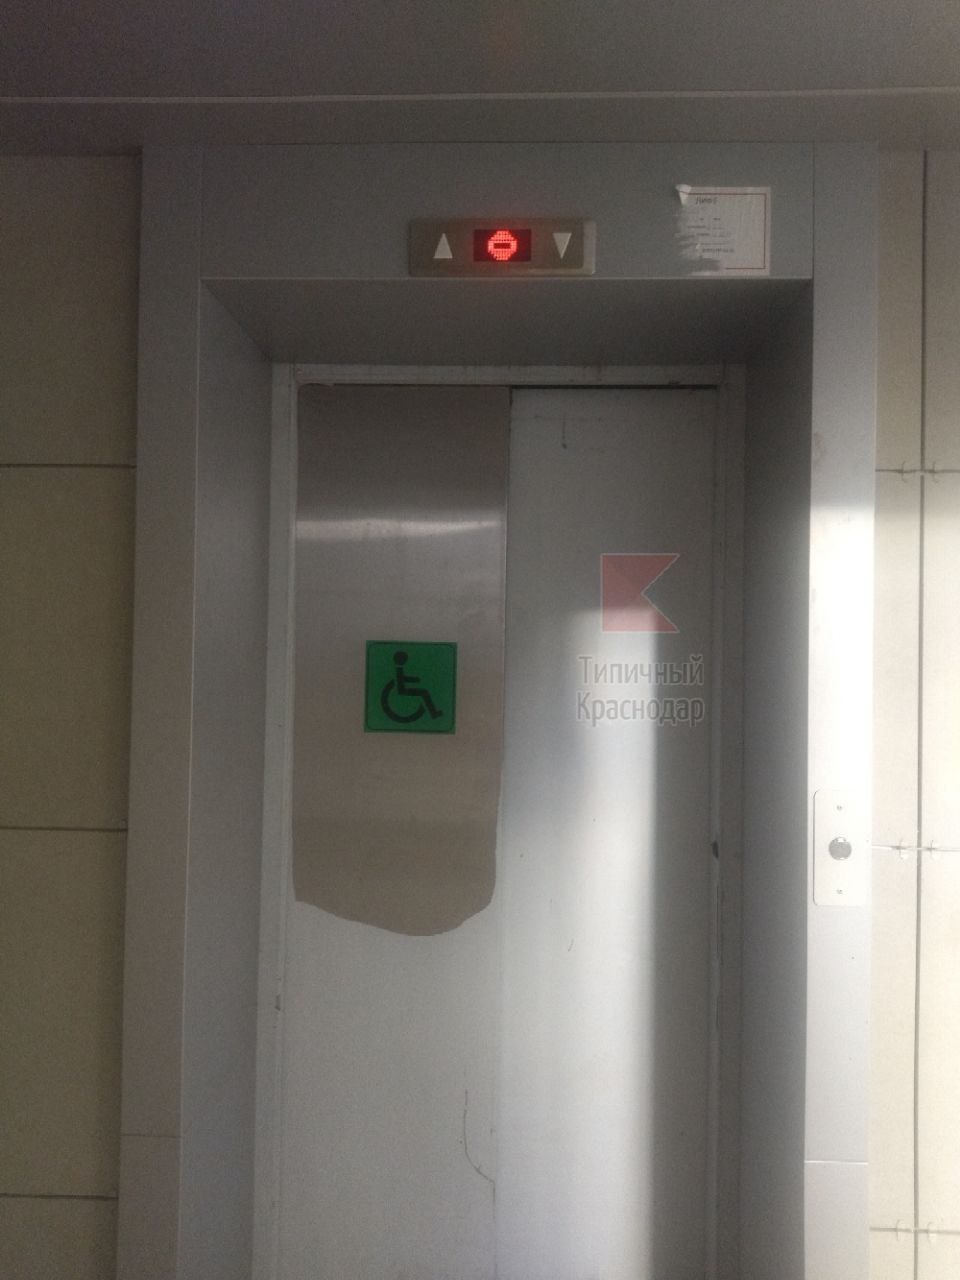 Не работает лифт на кресле